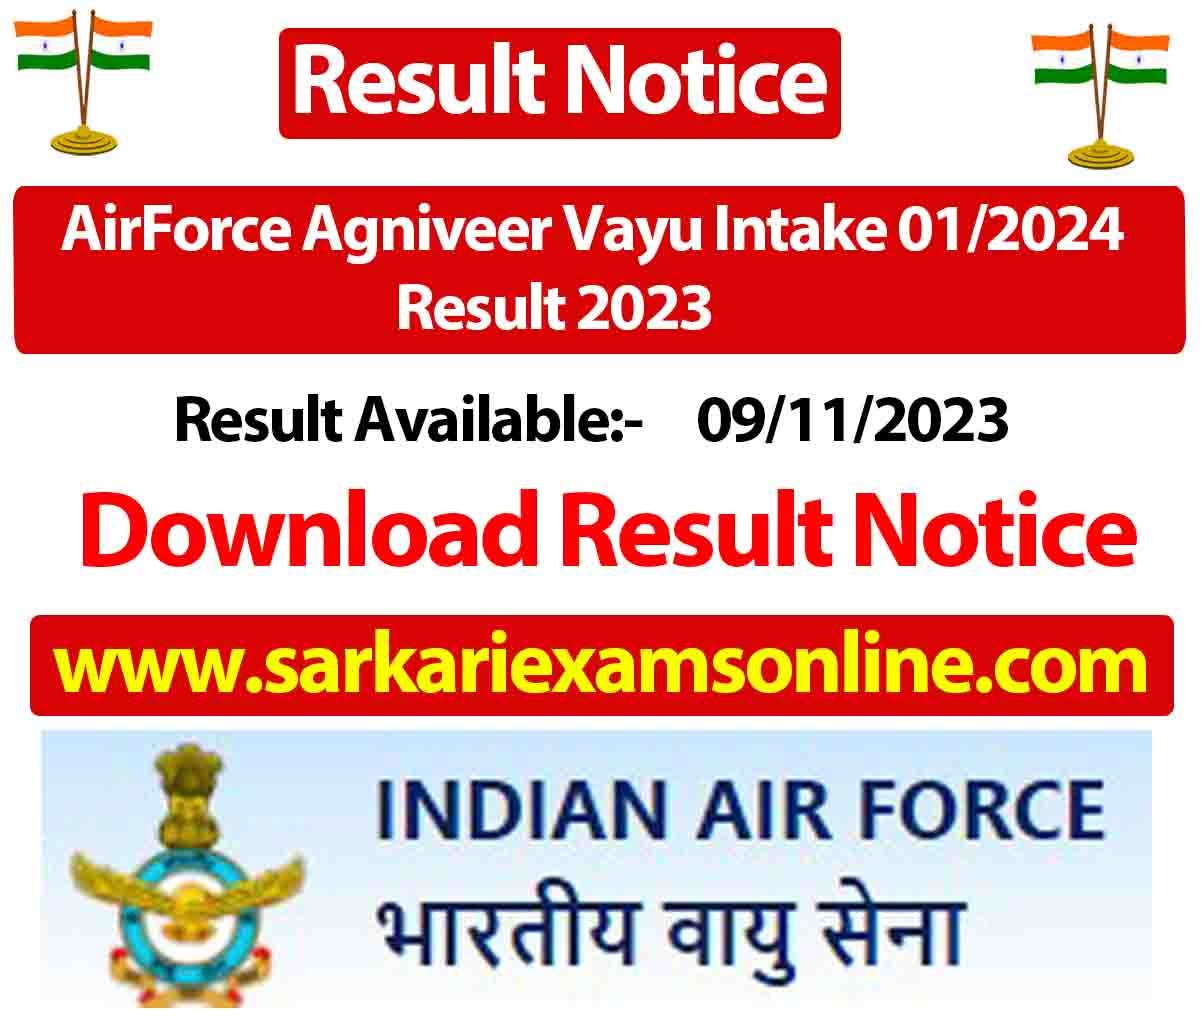 AirForce Agniveer Vayu Intake 01/2024 Result 2023